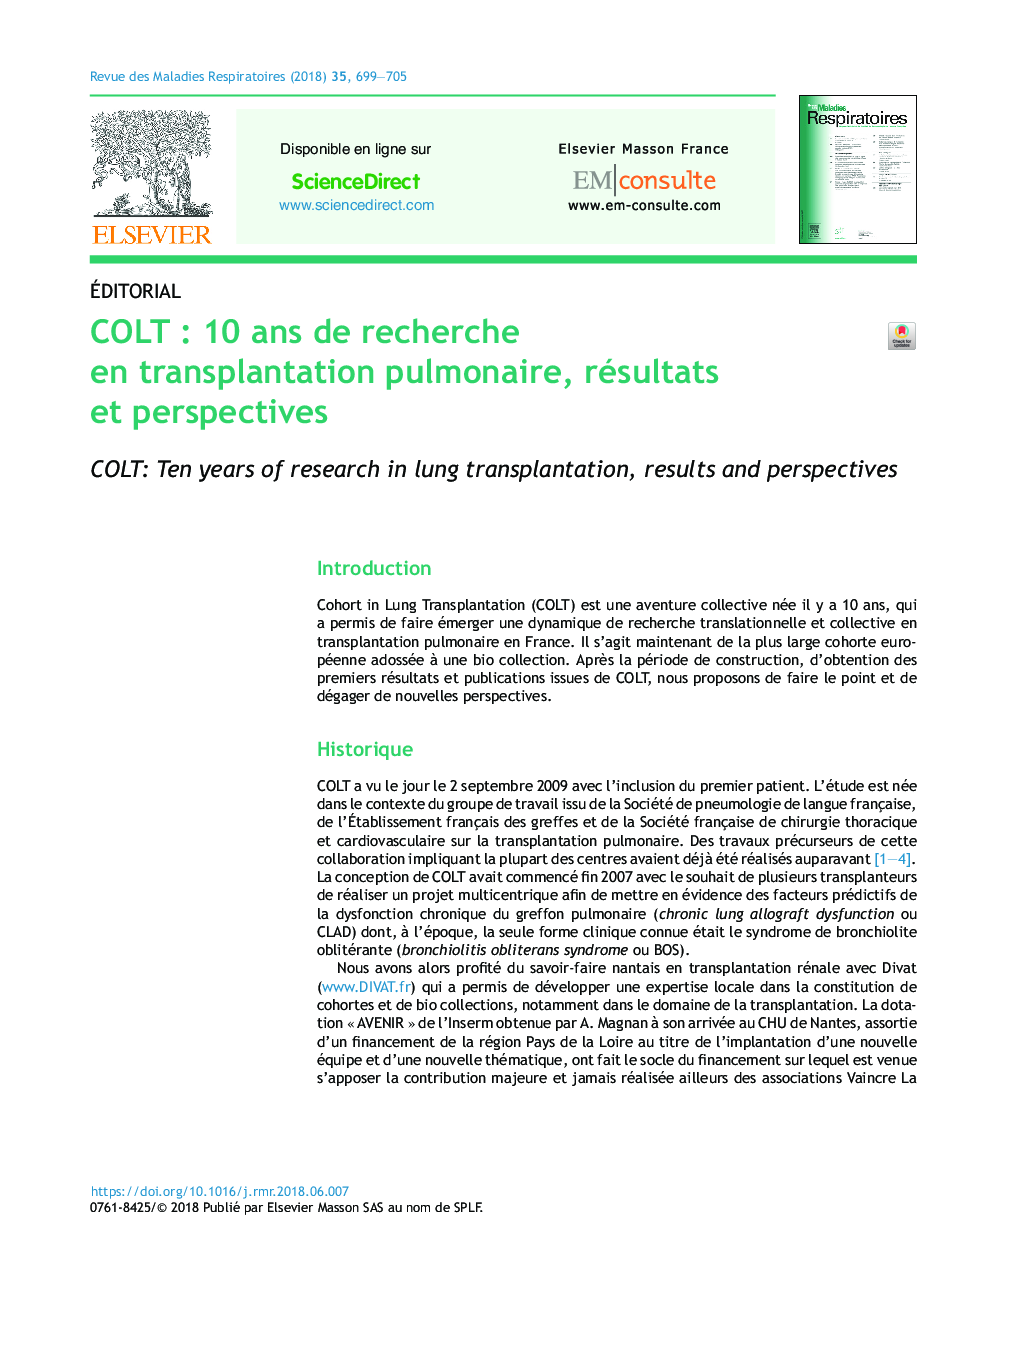 COLTÂ : 10Â ans de recherche en transplantation pulmonaire, résultats et perspectives